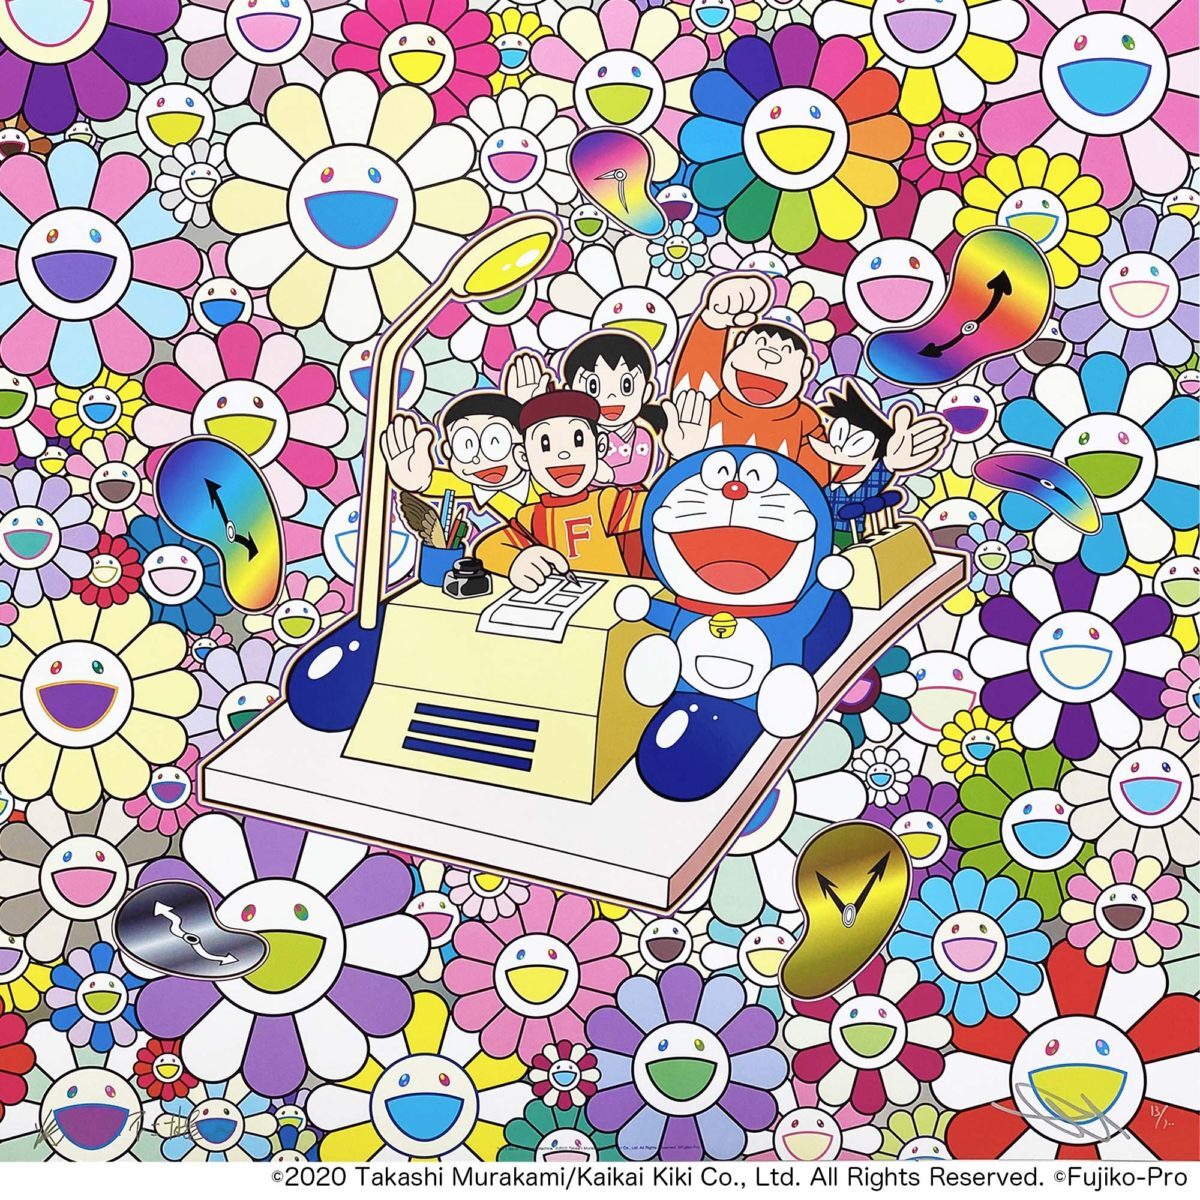  внутренний стандартный магазин покупка kaikaikiki zingaro Мураками . подписан Doraemon постер ED300 время механизм . let's go- новый товар нераспечатанный 